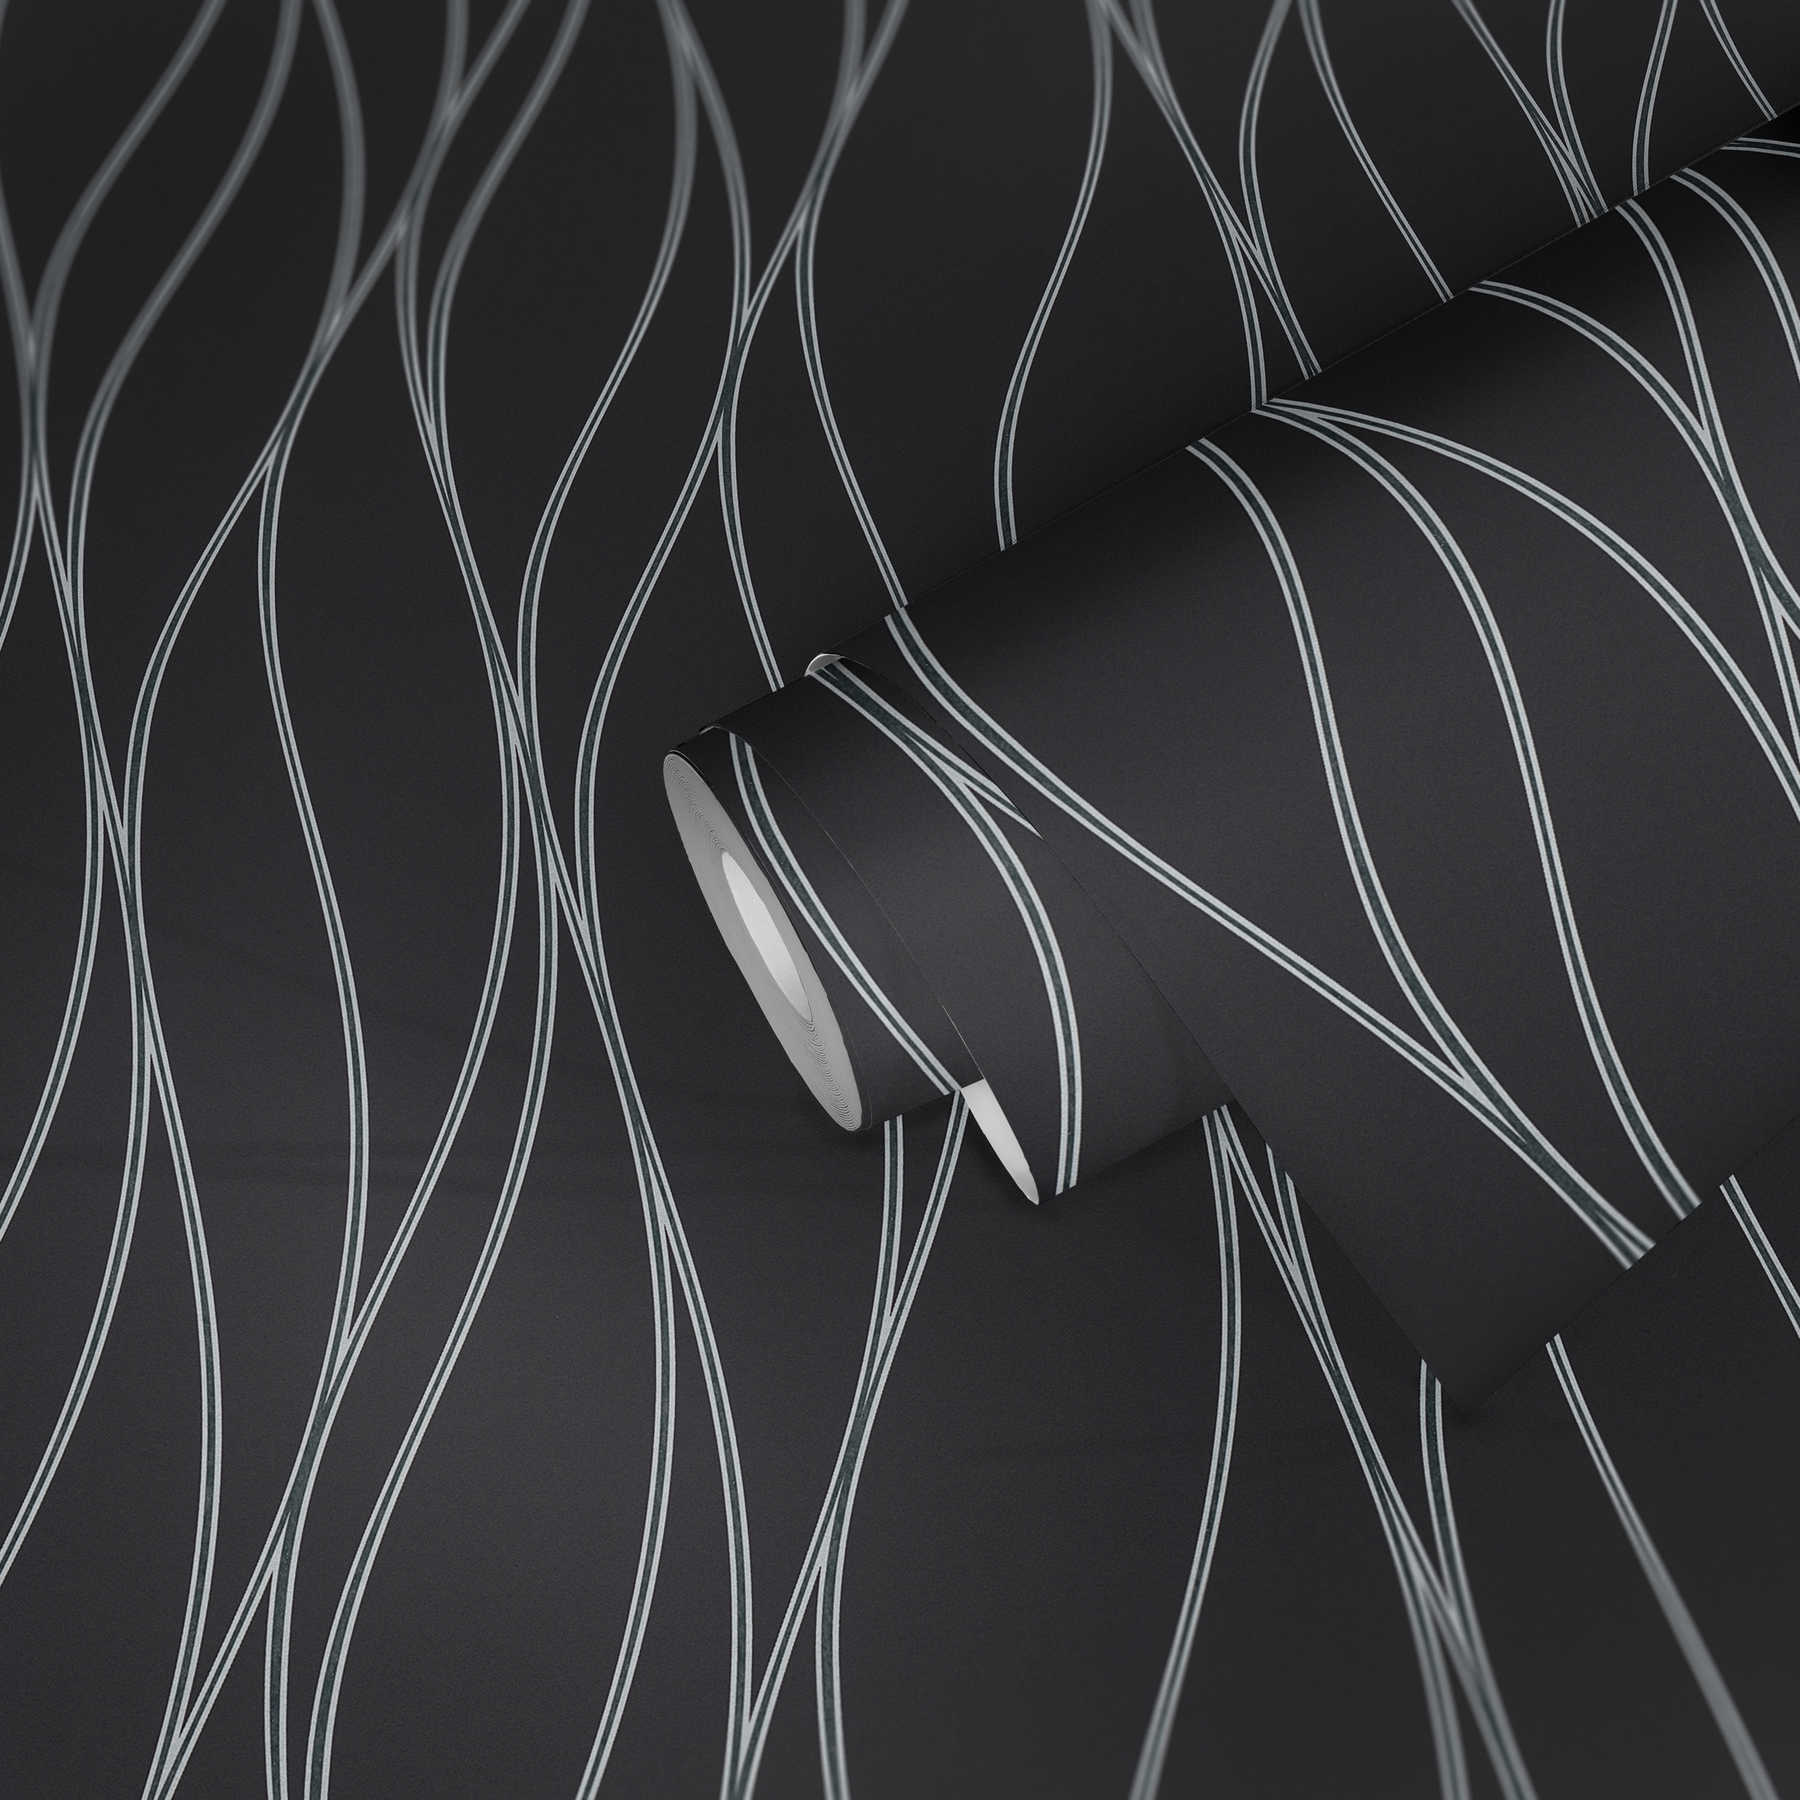             behang golvende lijnen verticaal, metallic effect - zwart, zilver, grijs
        